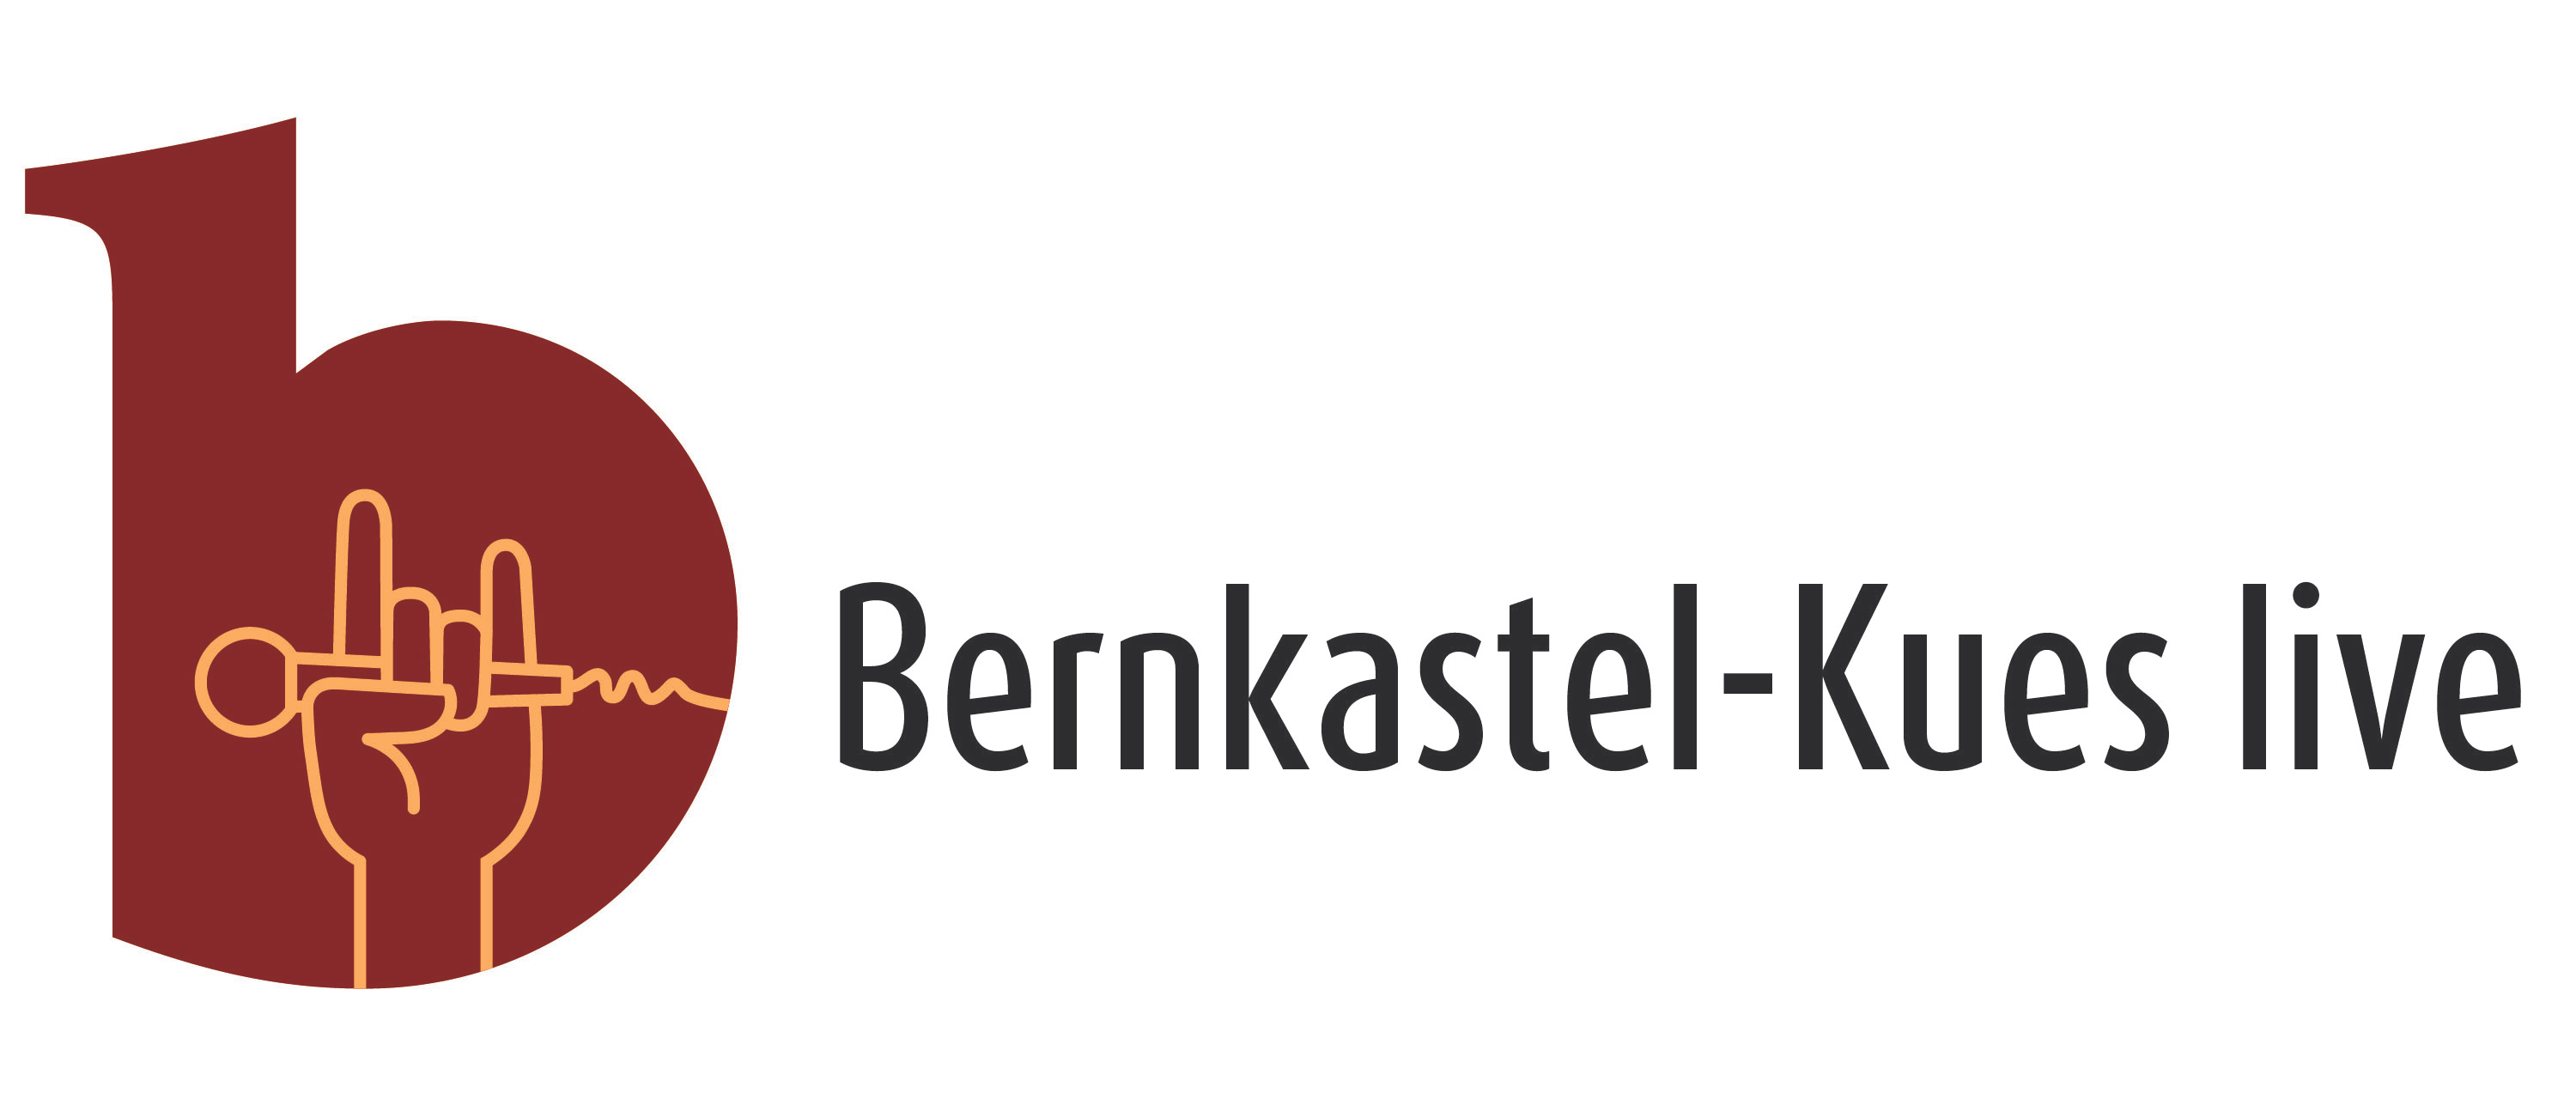 Kultur & Kur GmbH Bernkastel-Kues